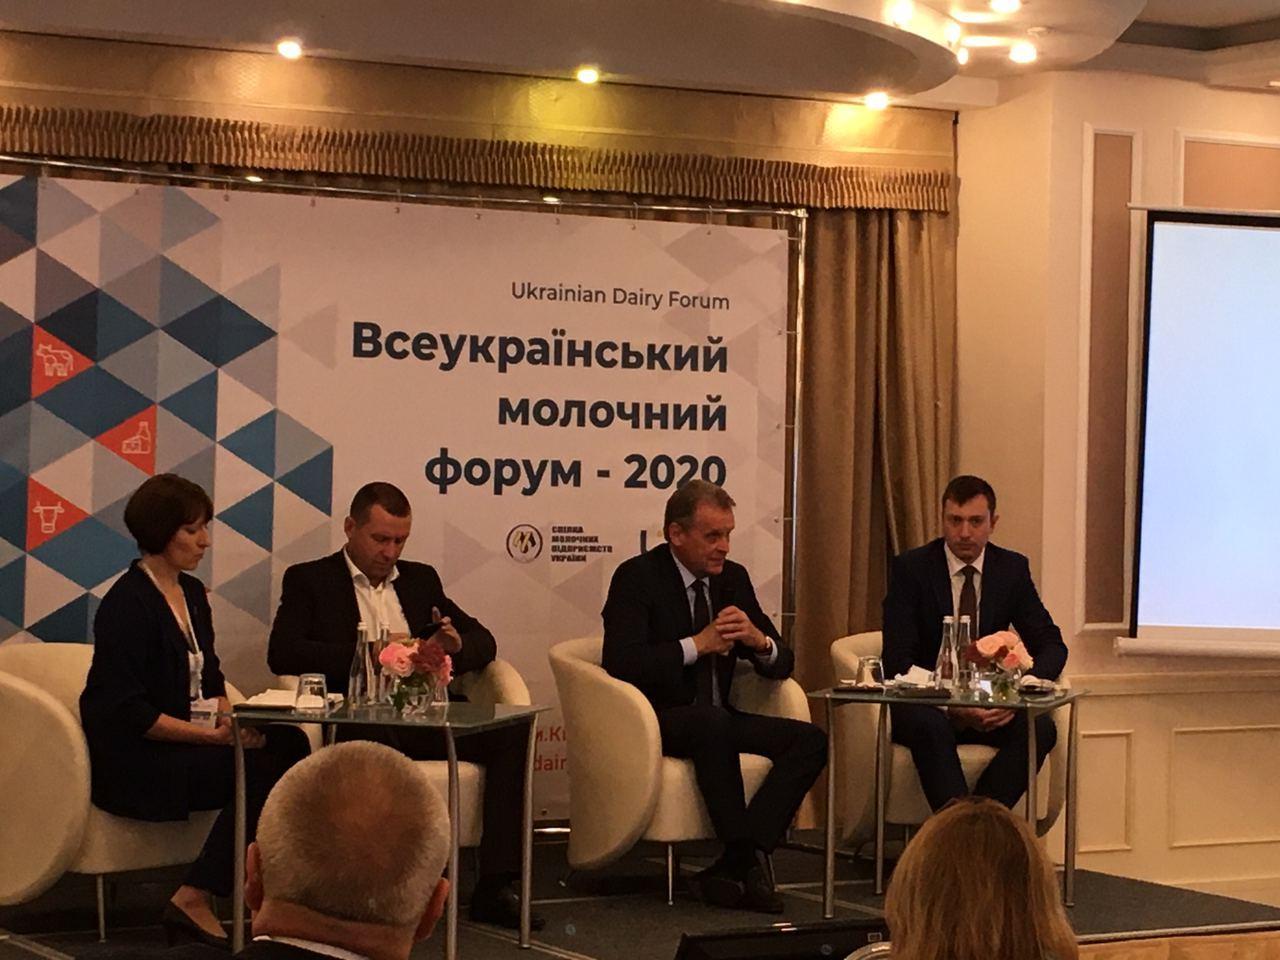 У Києві проходить Всеукраїнський молочний форум 2020, присвячений проблемам галузі